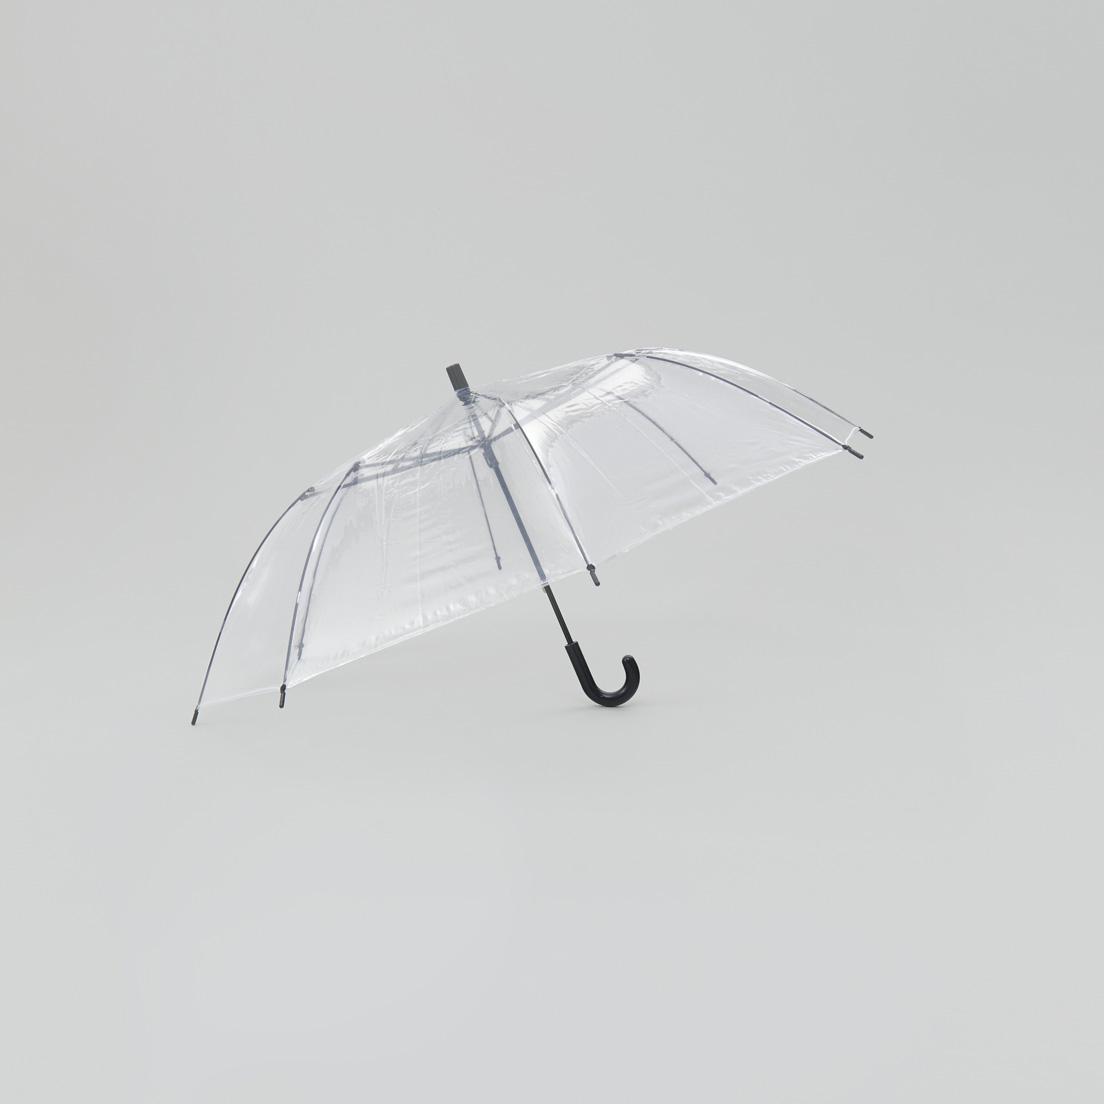 ショートワイド傘〈スギタ〉長傘と折り畳み傘の長所を併せ持つ《ショートワイド傘》。中棒を短くすることで、全長60㎝とコンパクトなサイズを実現。持つ際に腕がＶ字になるため、負荷がかかりにくく、強い雨風でもしっかりコントロールできる。広げると直径103㎝と長傘同様のゆとりがあり、雨に濡れにくい。1,296円（スギタ TEL 06 6541 0180）。